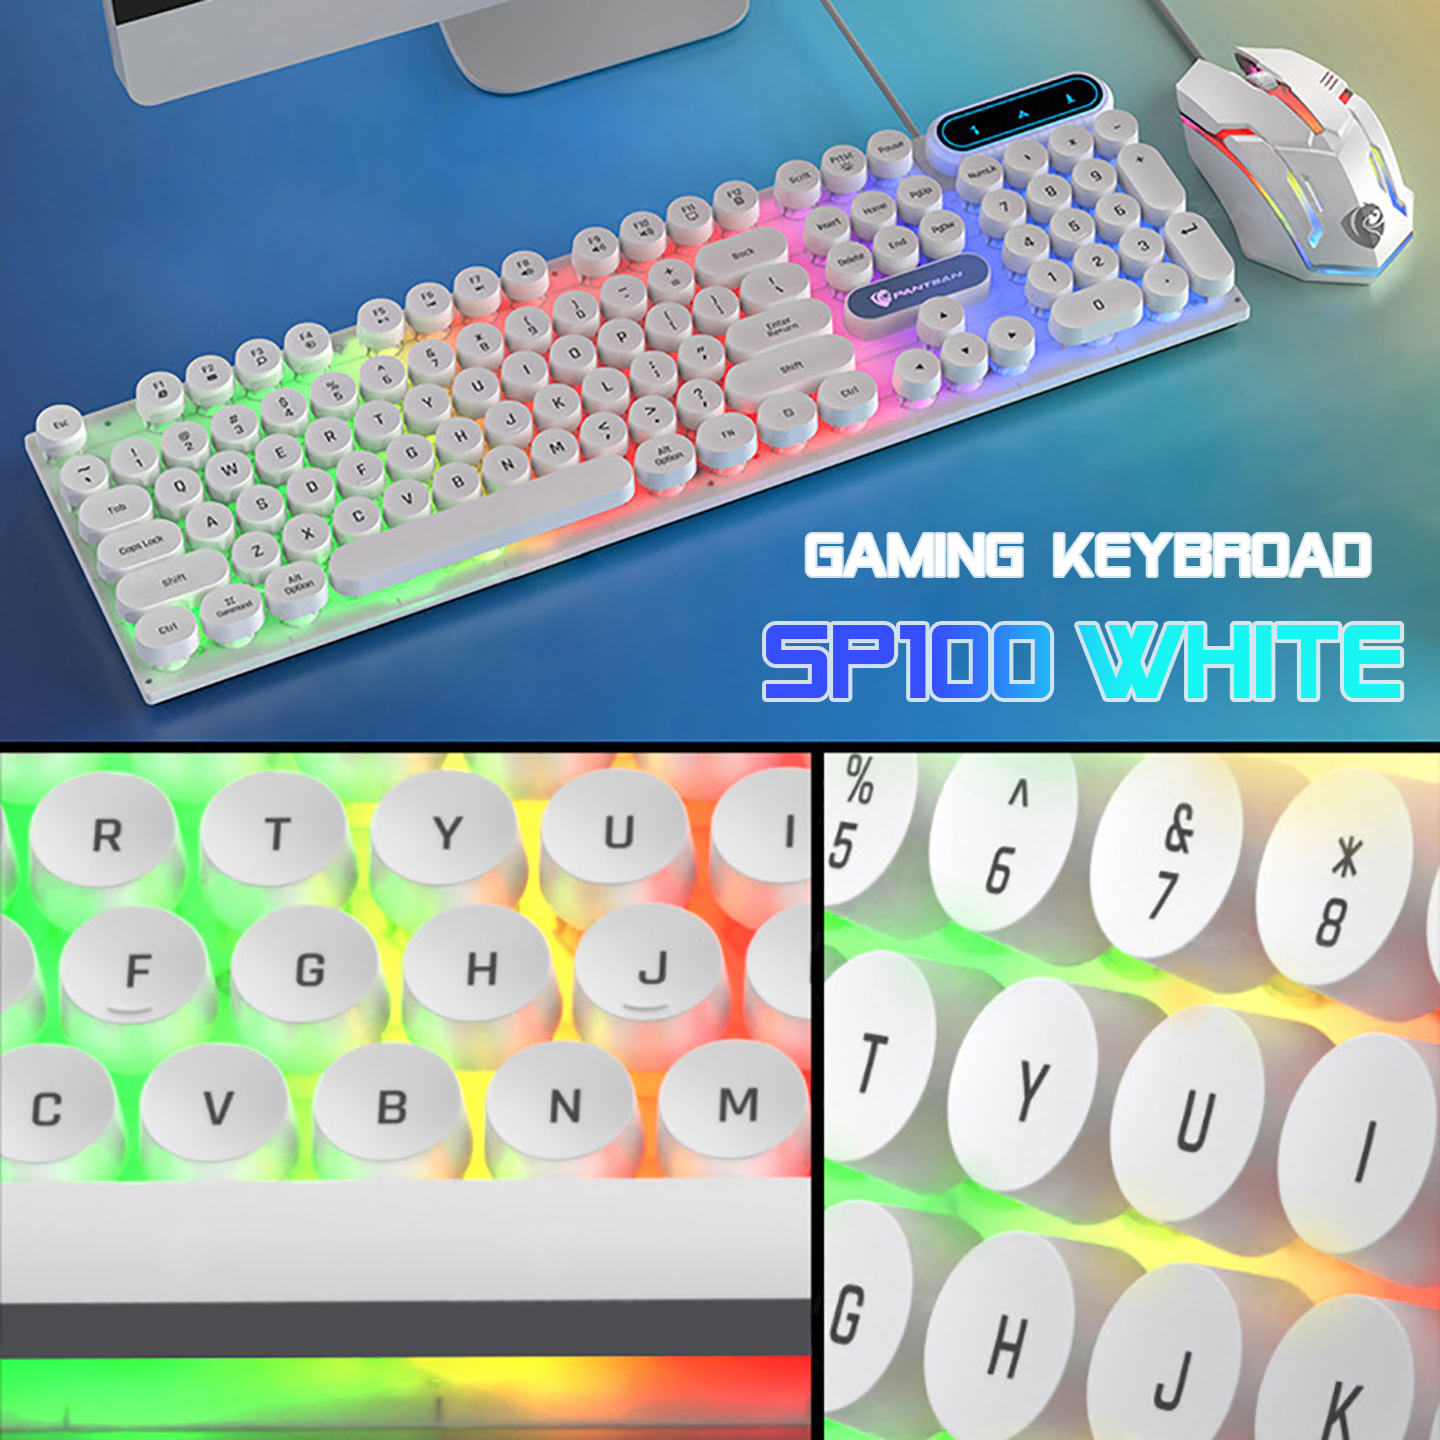 Bàn phím máy tính gaming giả cơ Sidotech SP100 thiết kế bàn phím nút tròn có Led RGB, cấu tạo công thái học cho cảm giác gõ chân thực, chống nước tiêu chuẩn, chuyên chơi game và làm việc văn phòng - Hàng chính hãng